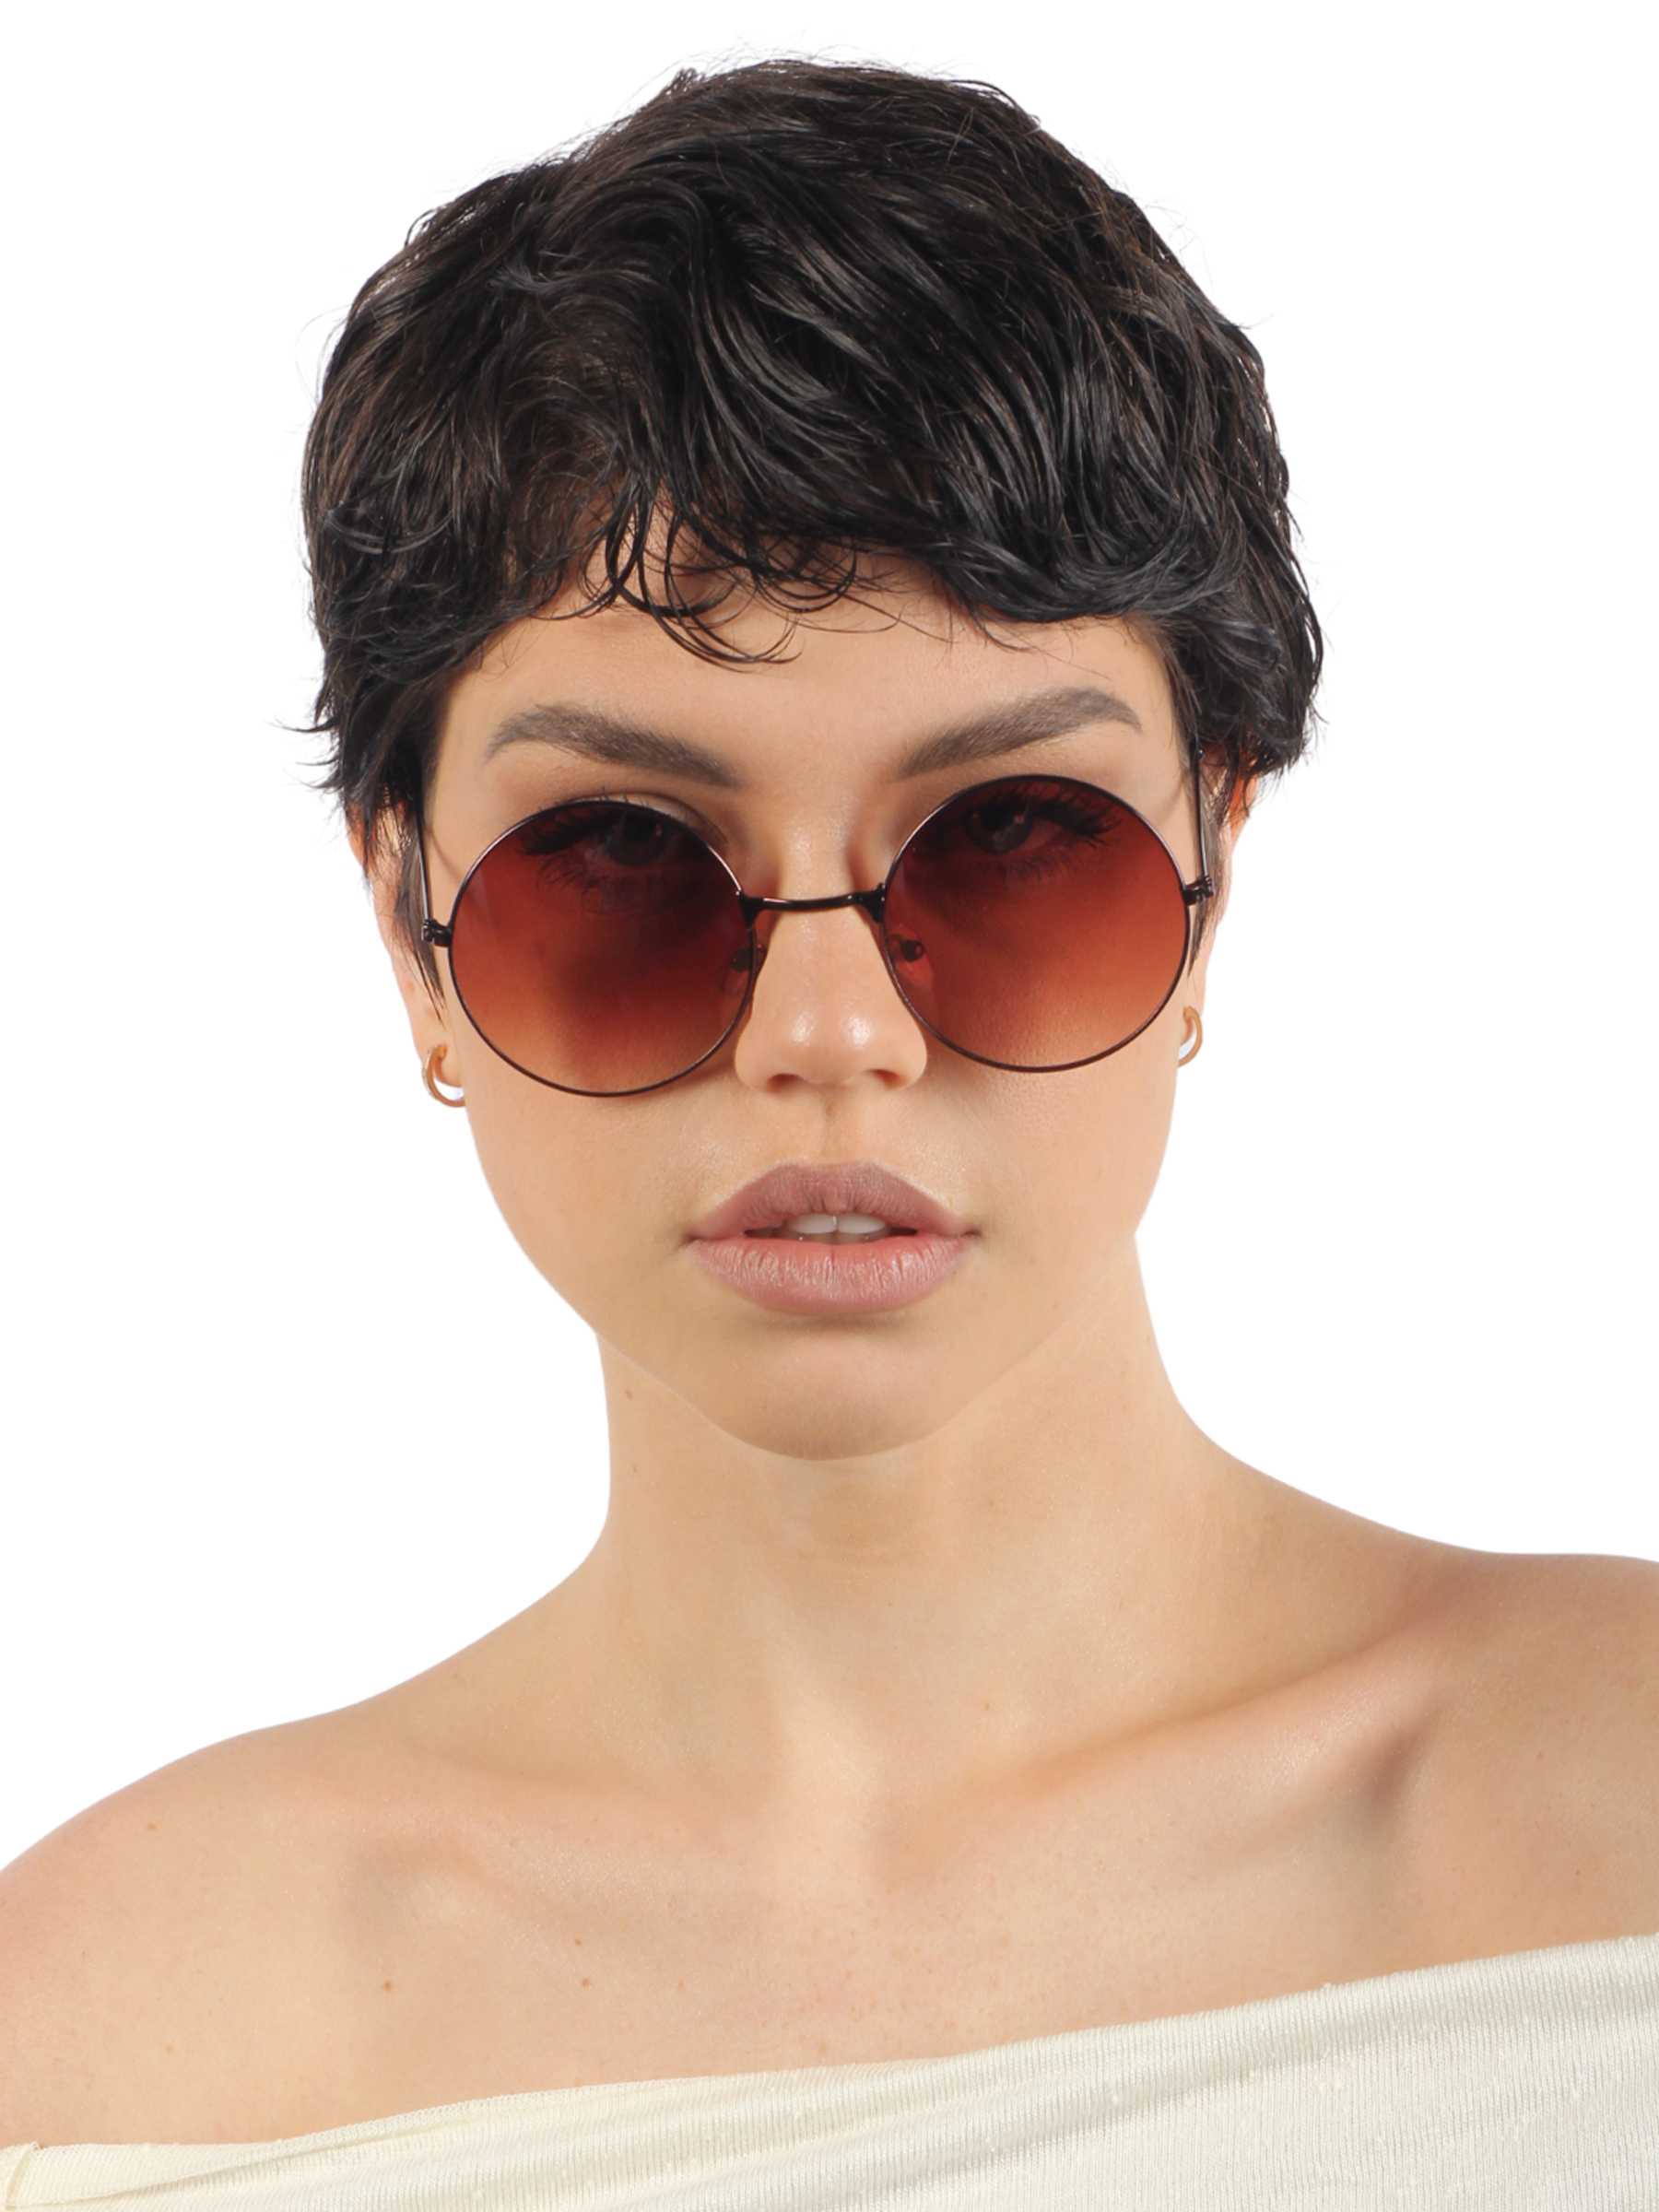 

Солнцезащитные очки унисекс Pretty Mania ANG554 коричневые, ANG554